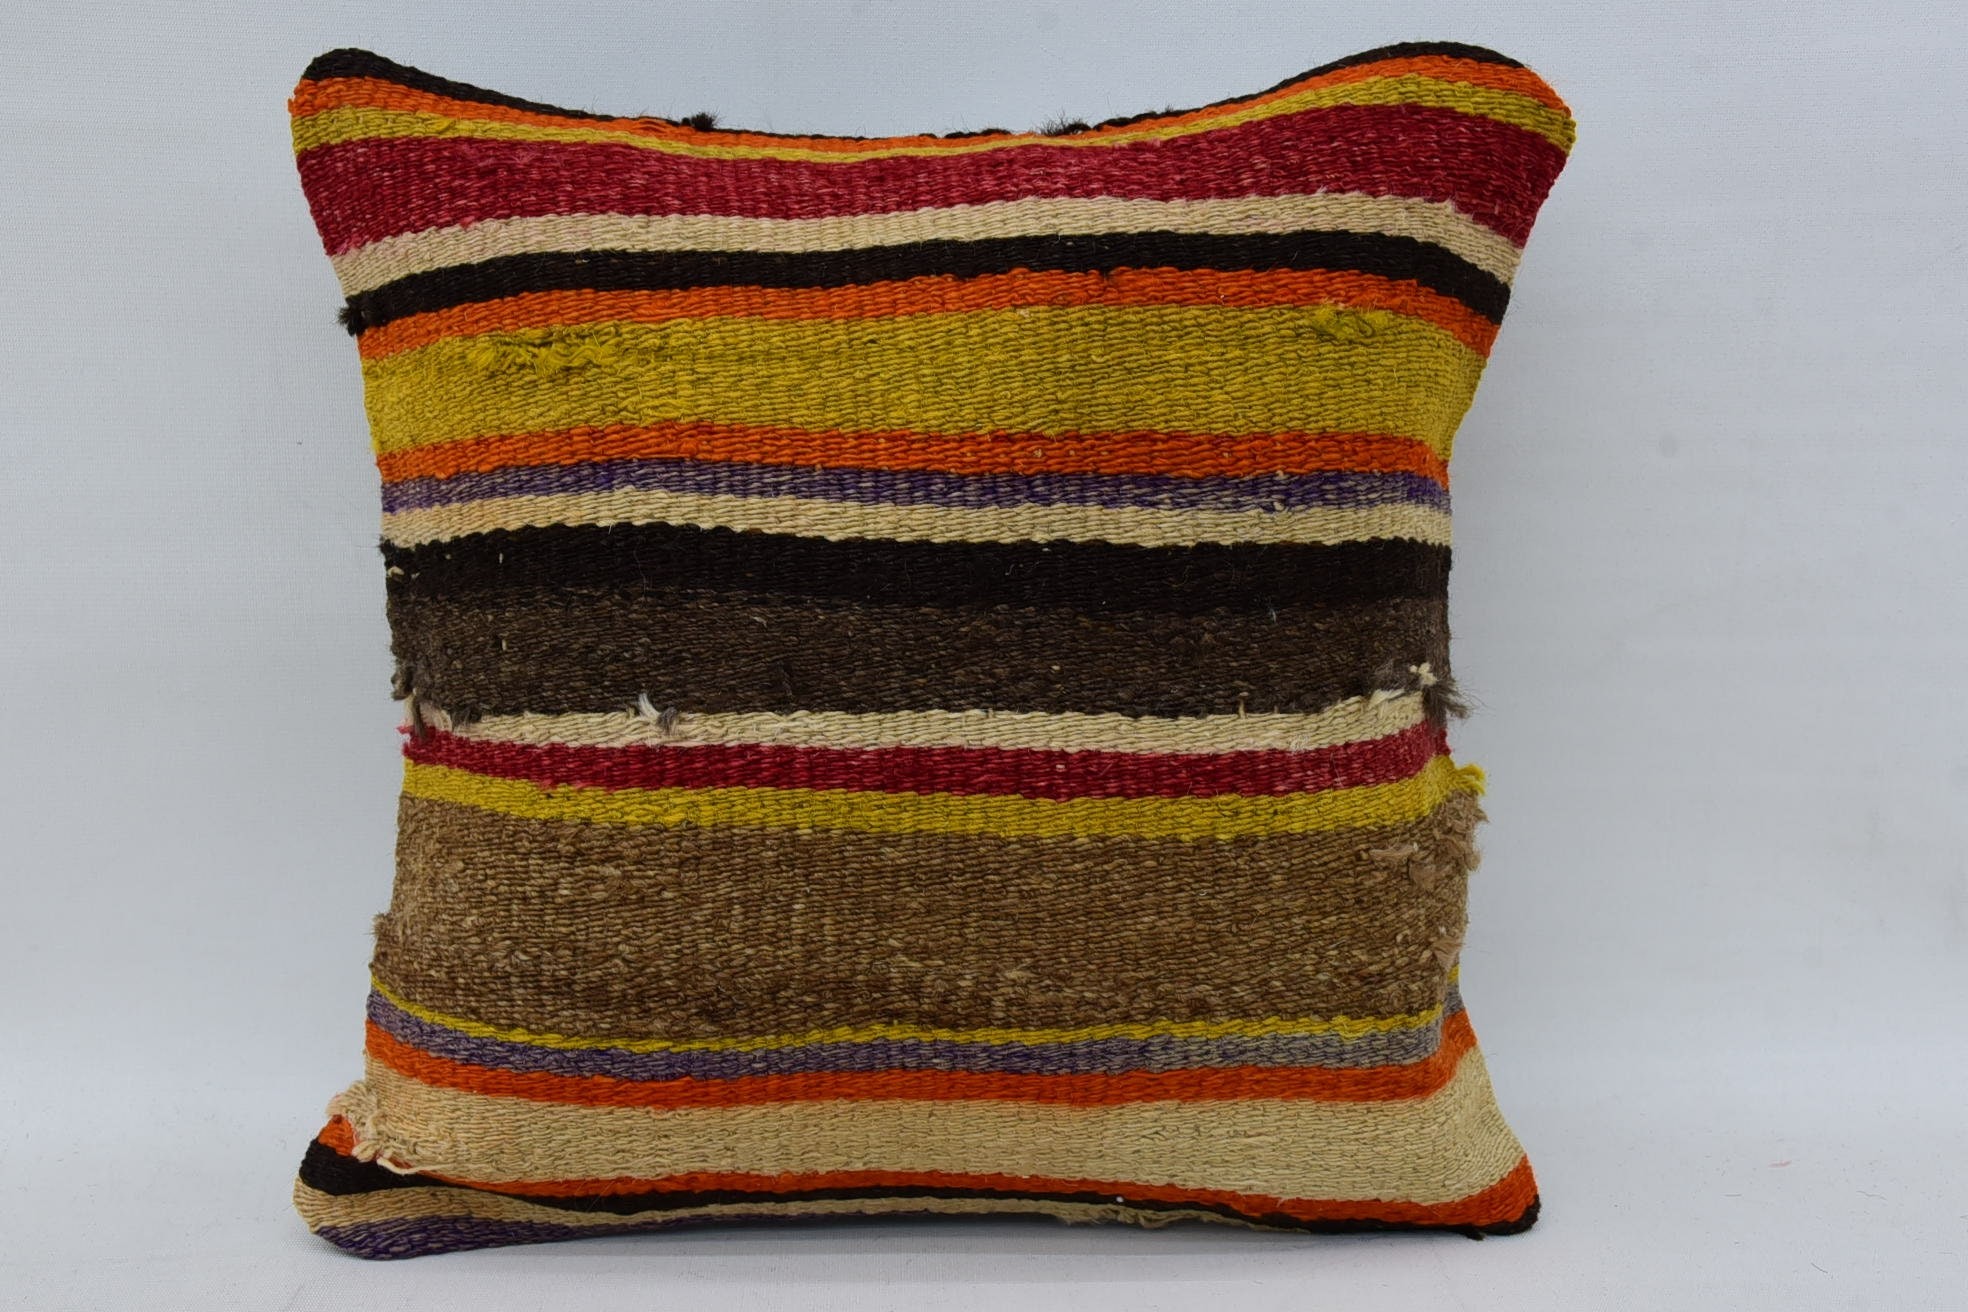 Vintage Kilim Pillow, Handmade Kilim Cushion, Decorative Bolster Pillow, Retro Cushion, Gift Pillow, 14"x14" Brown Cushion